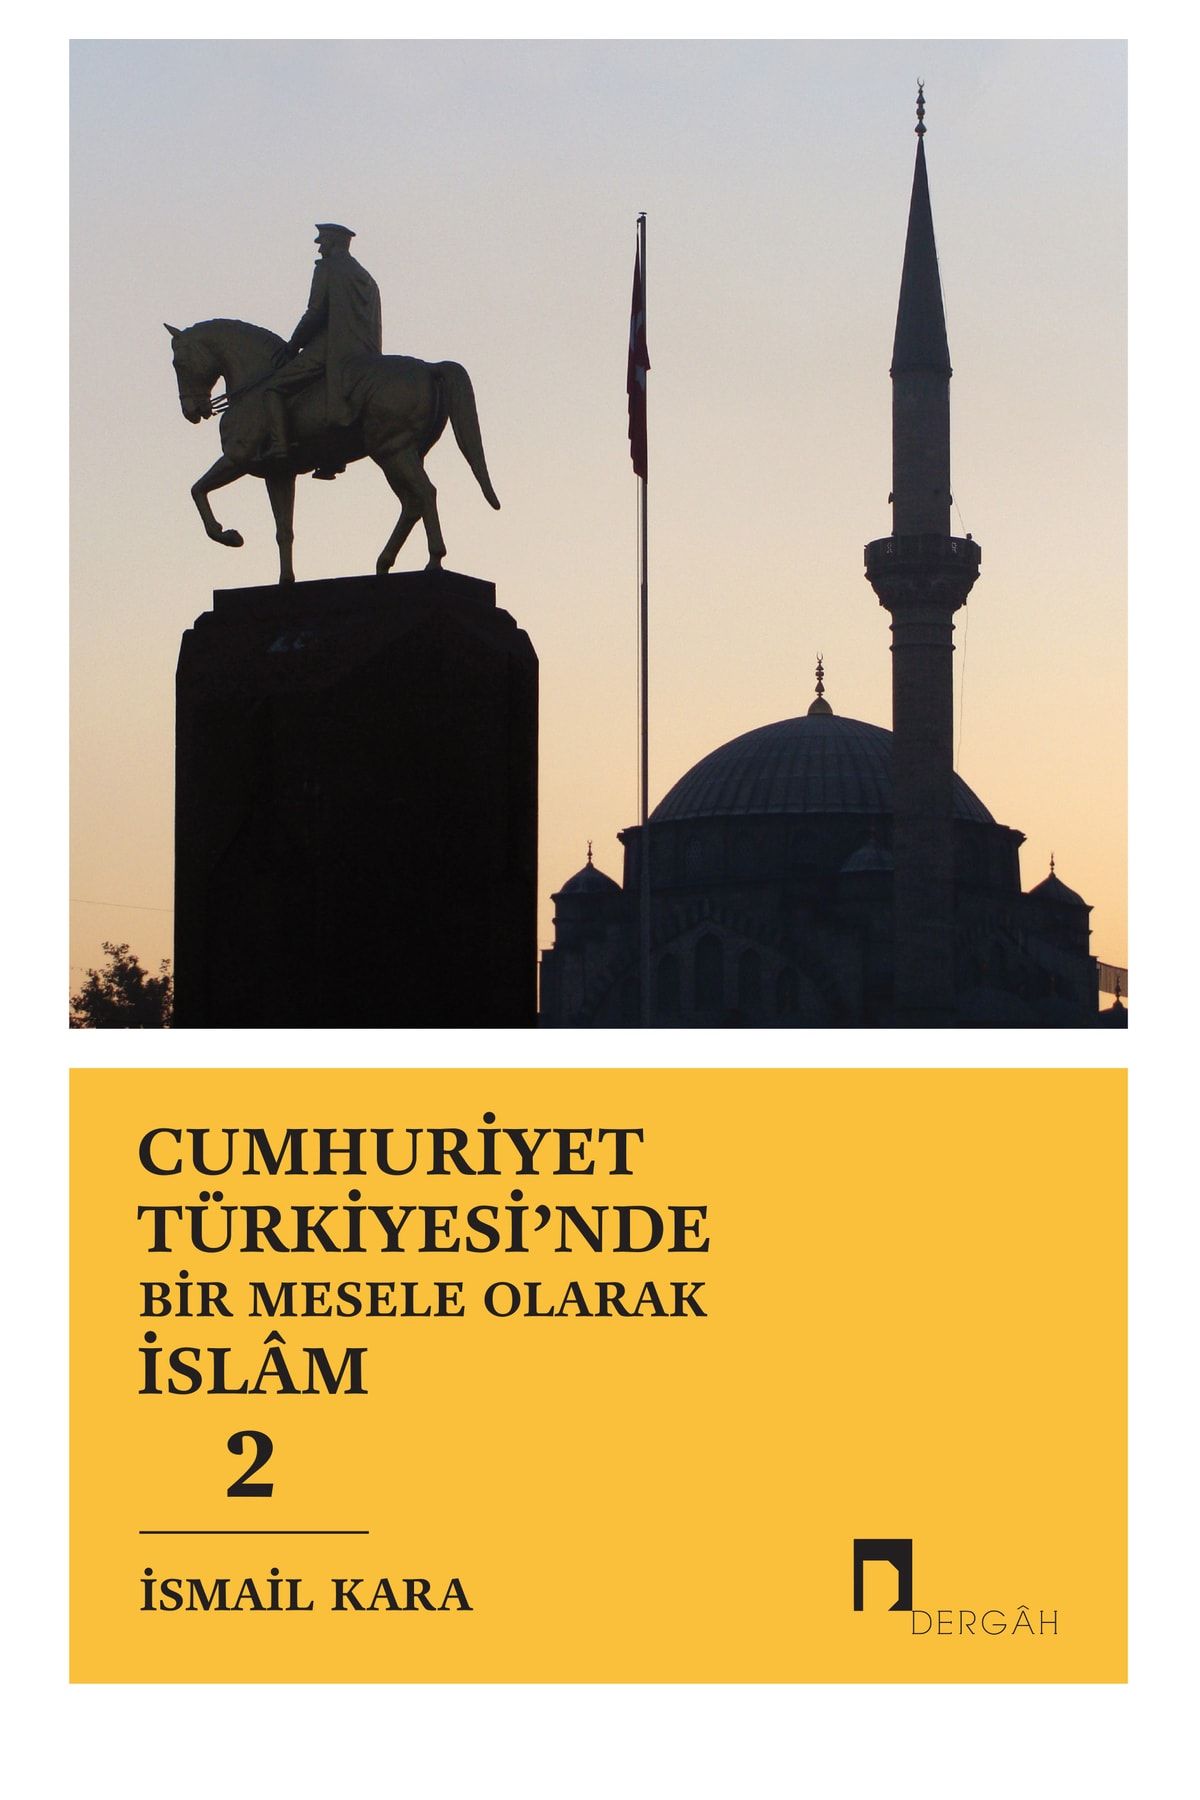 Dergah Yayınları Cumhuriyet Türkiyesi'nde Bir Mesele Olarak Islam 2. Cilt / Ismail Kara /